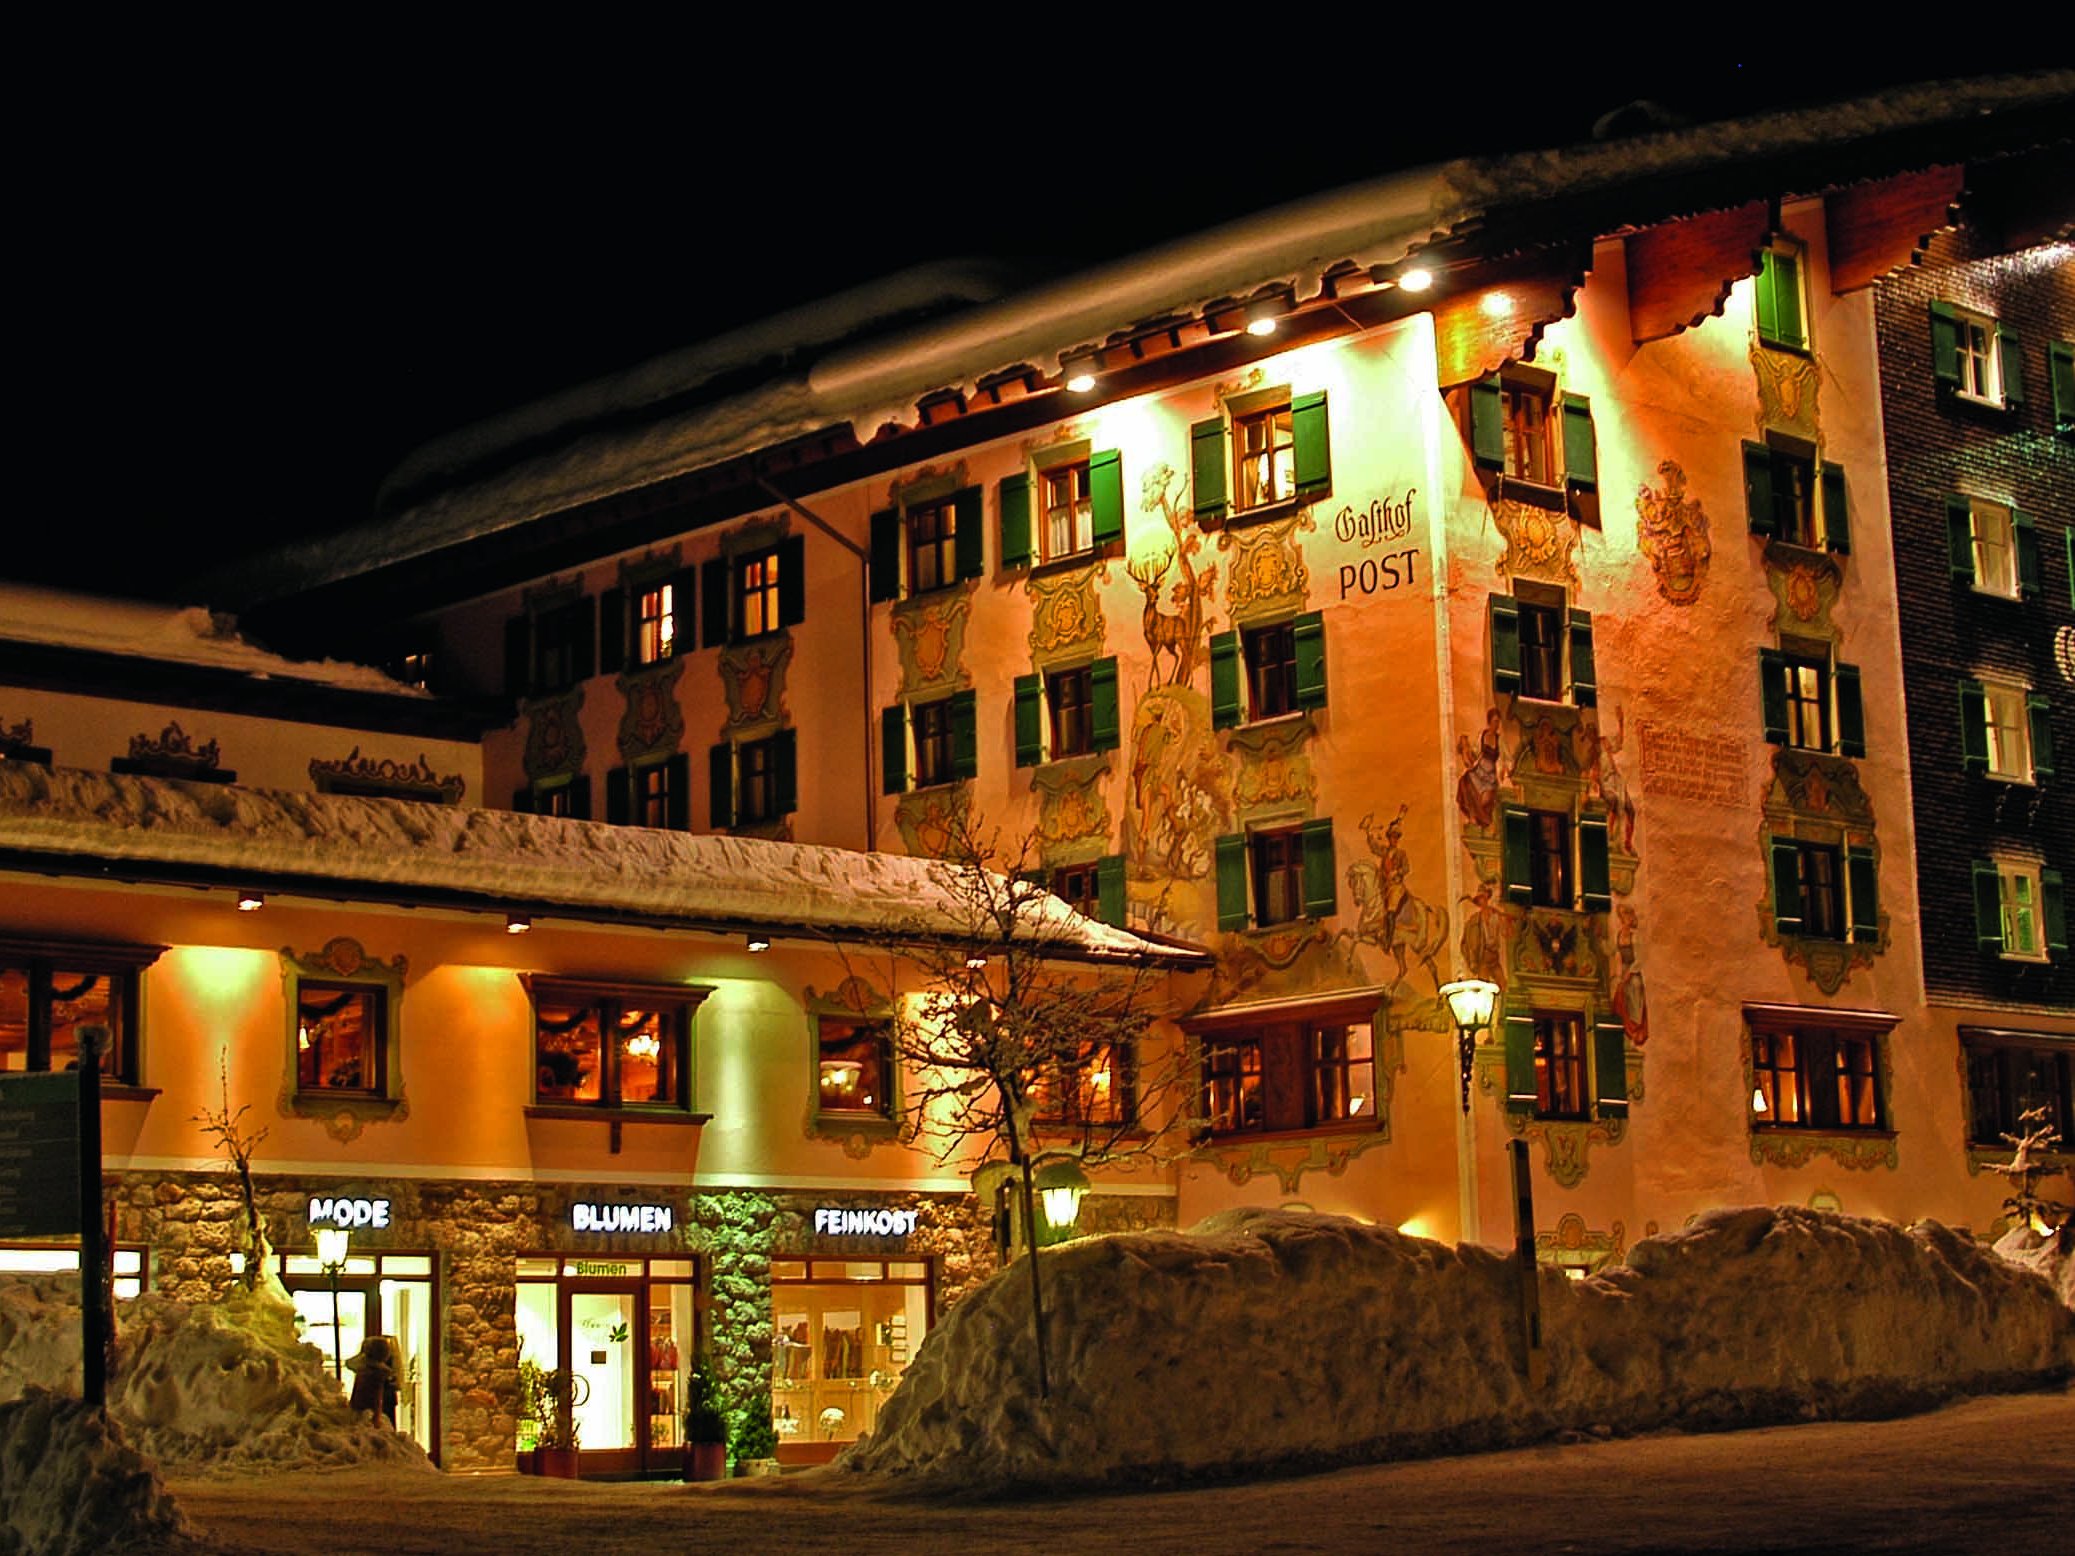 1960: Das Hotel in Arlberg bei Nacht.&nbsp;